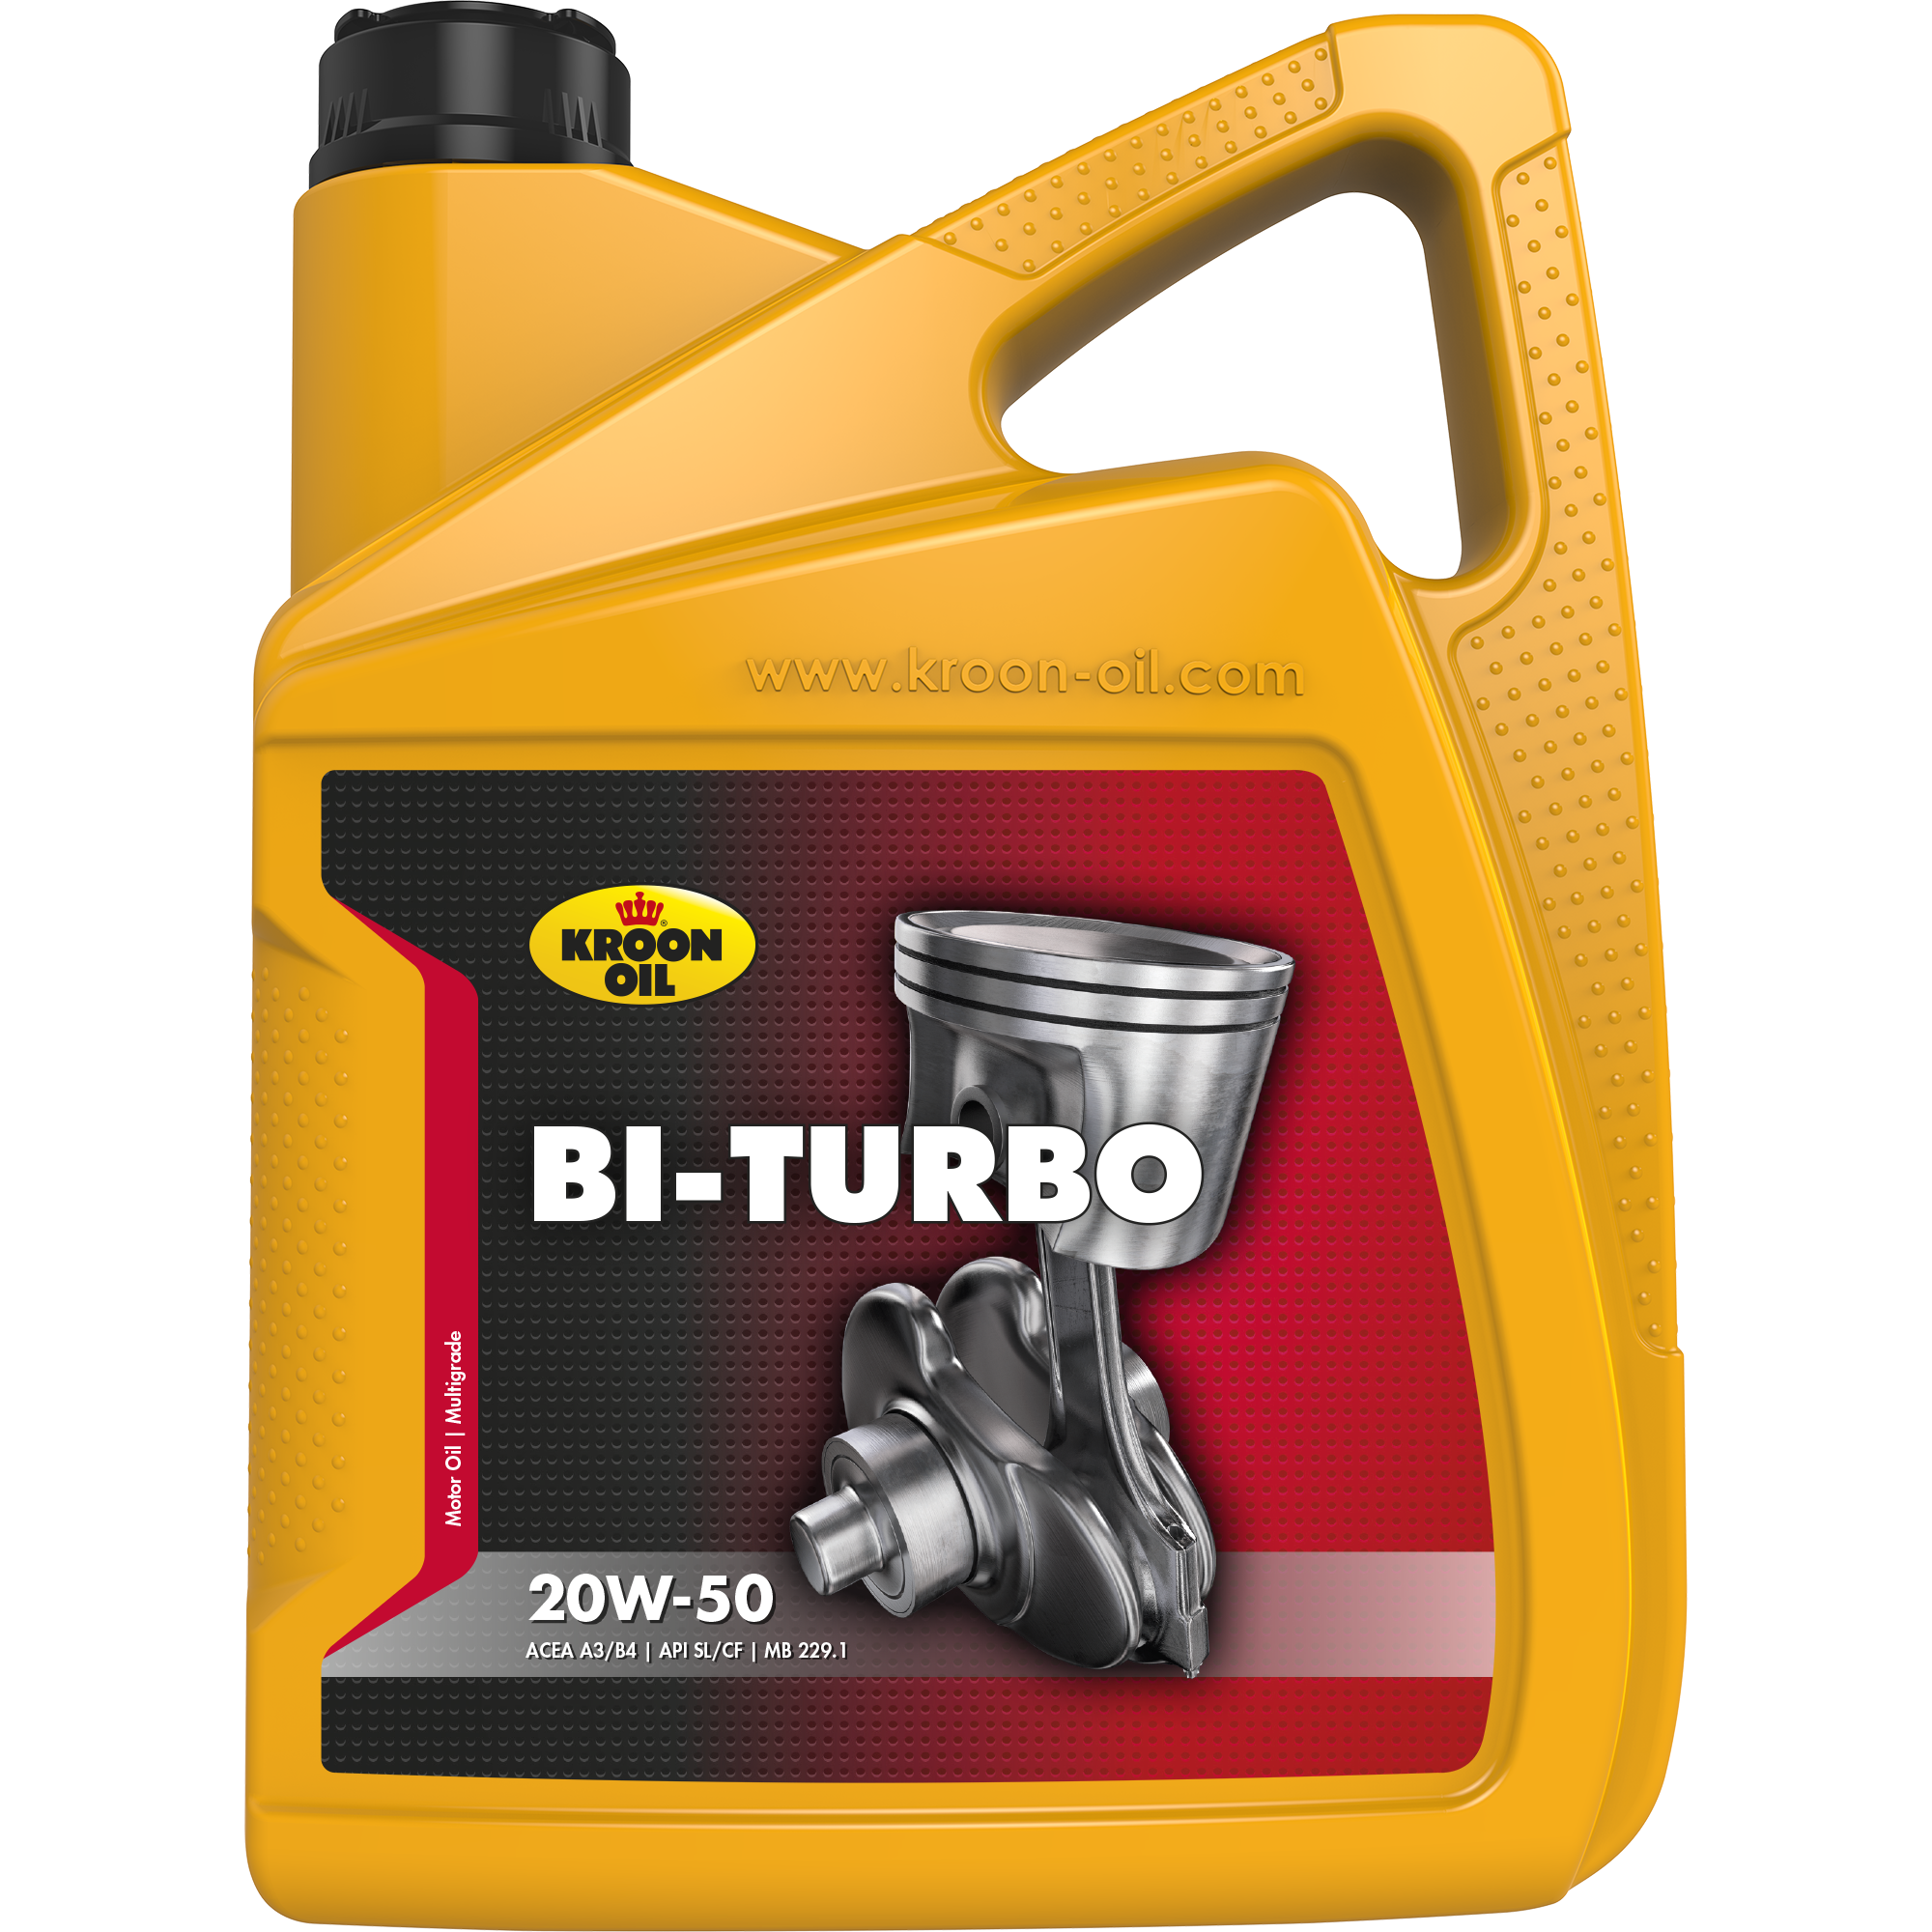 00340-5 Bi-Turbo 20W-50 is een universele, minerale motorolie, gebaseerd op hoogwaardige solvent geraffineerde basisoliën.